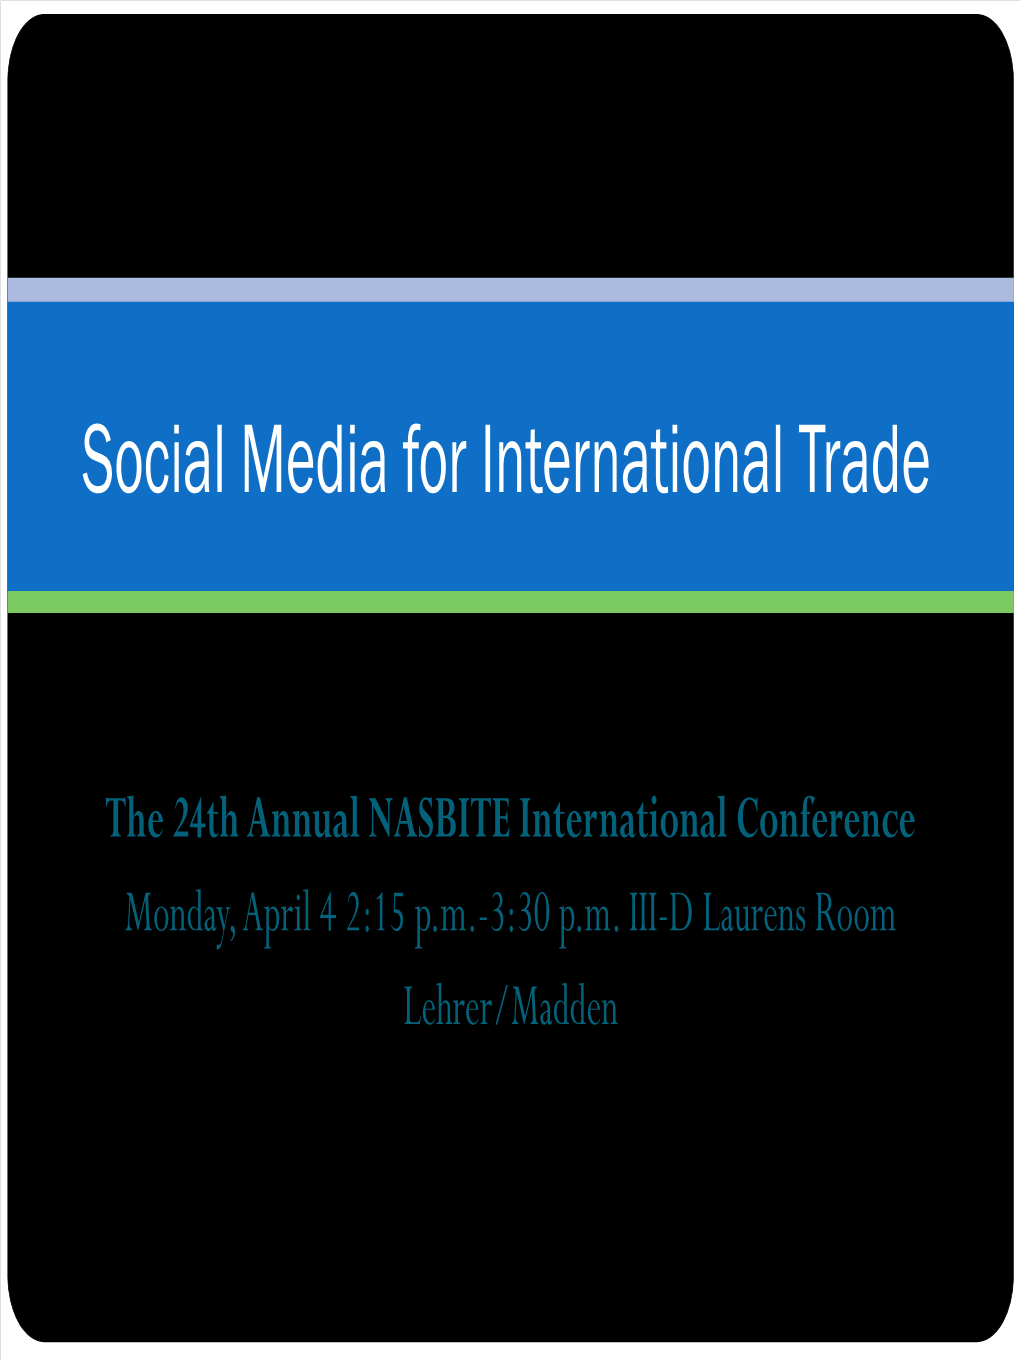 Social Media for International Trade